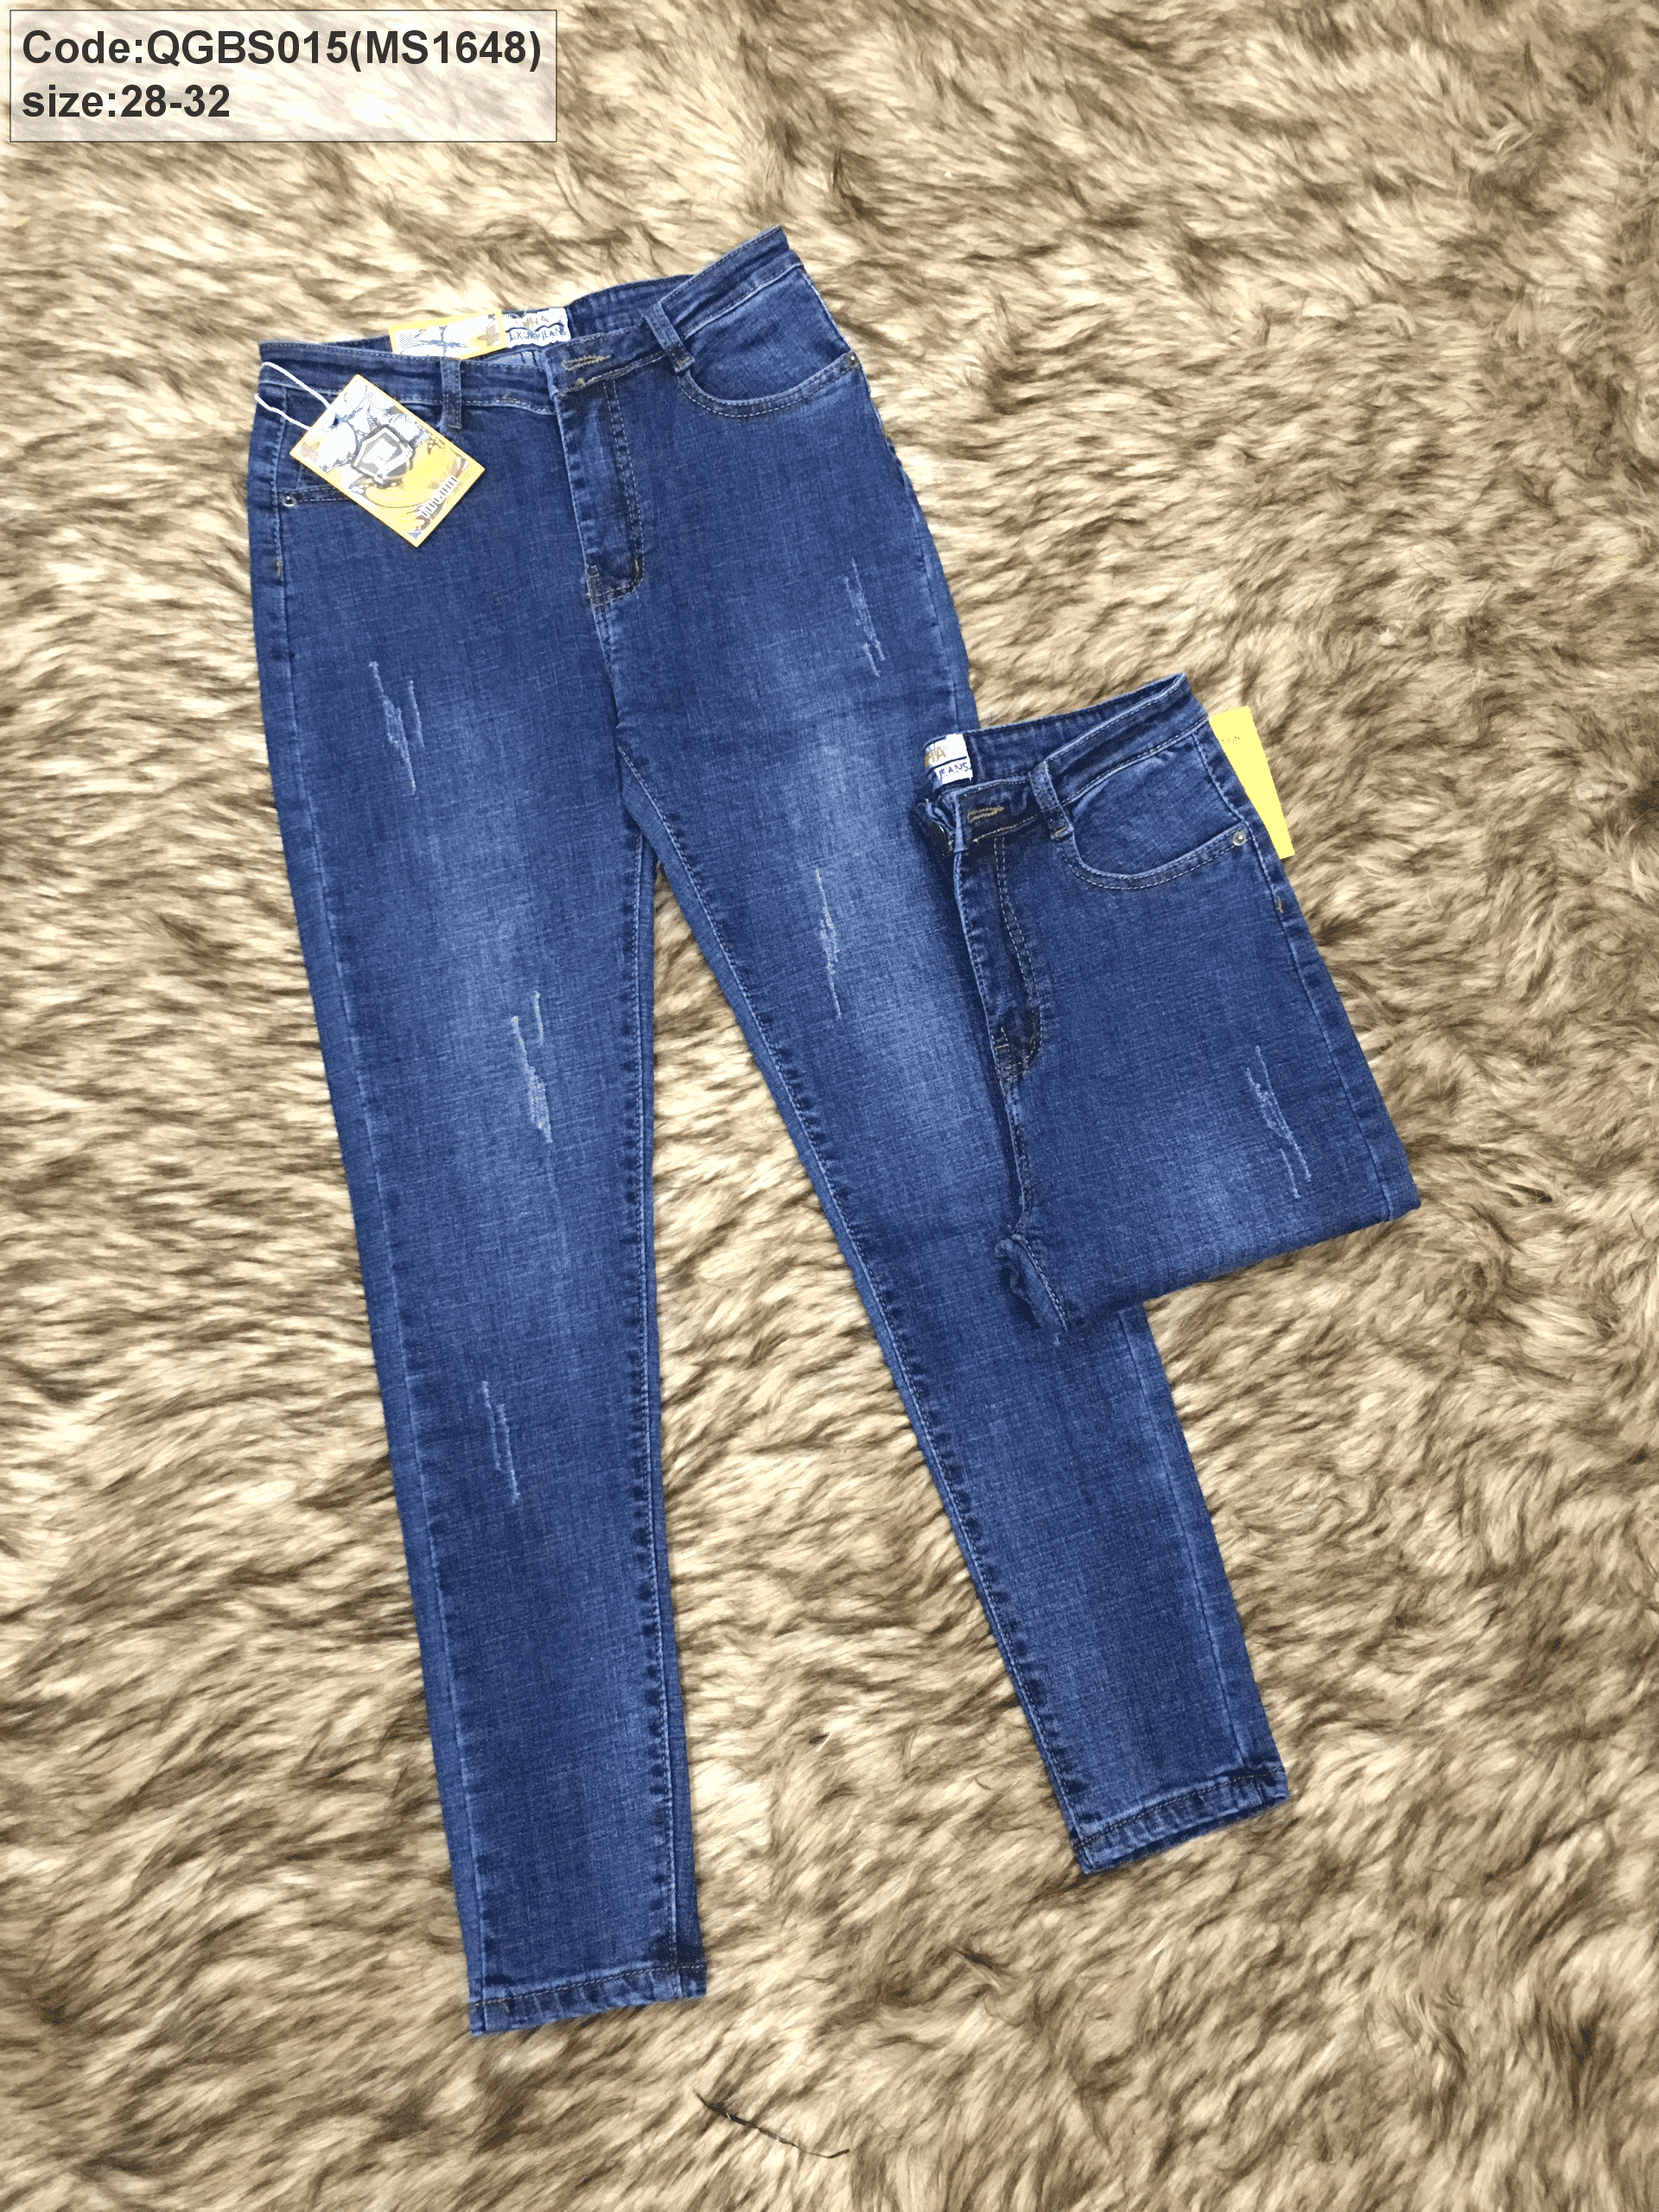 size quần jean | IVY moda